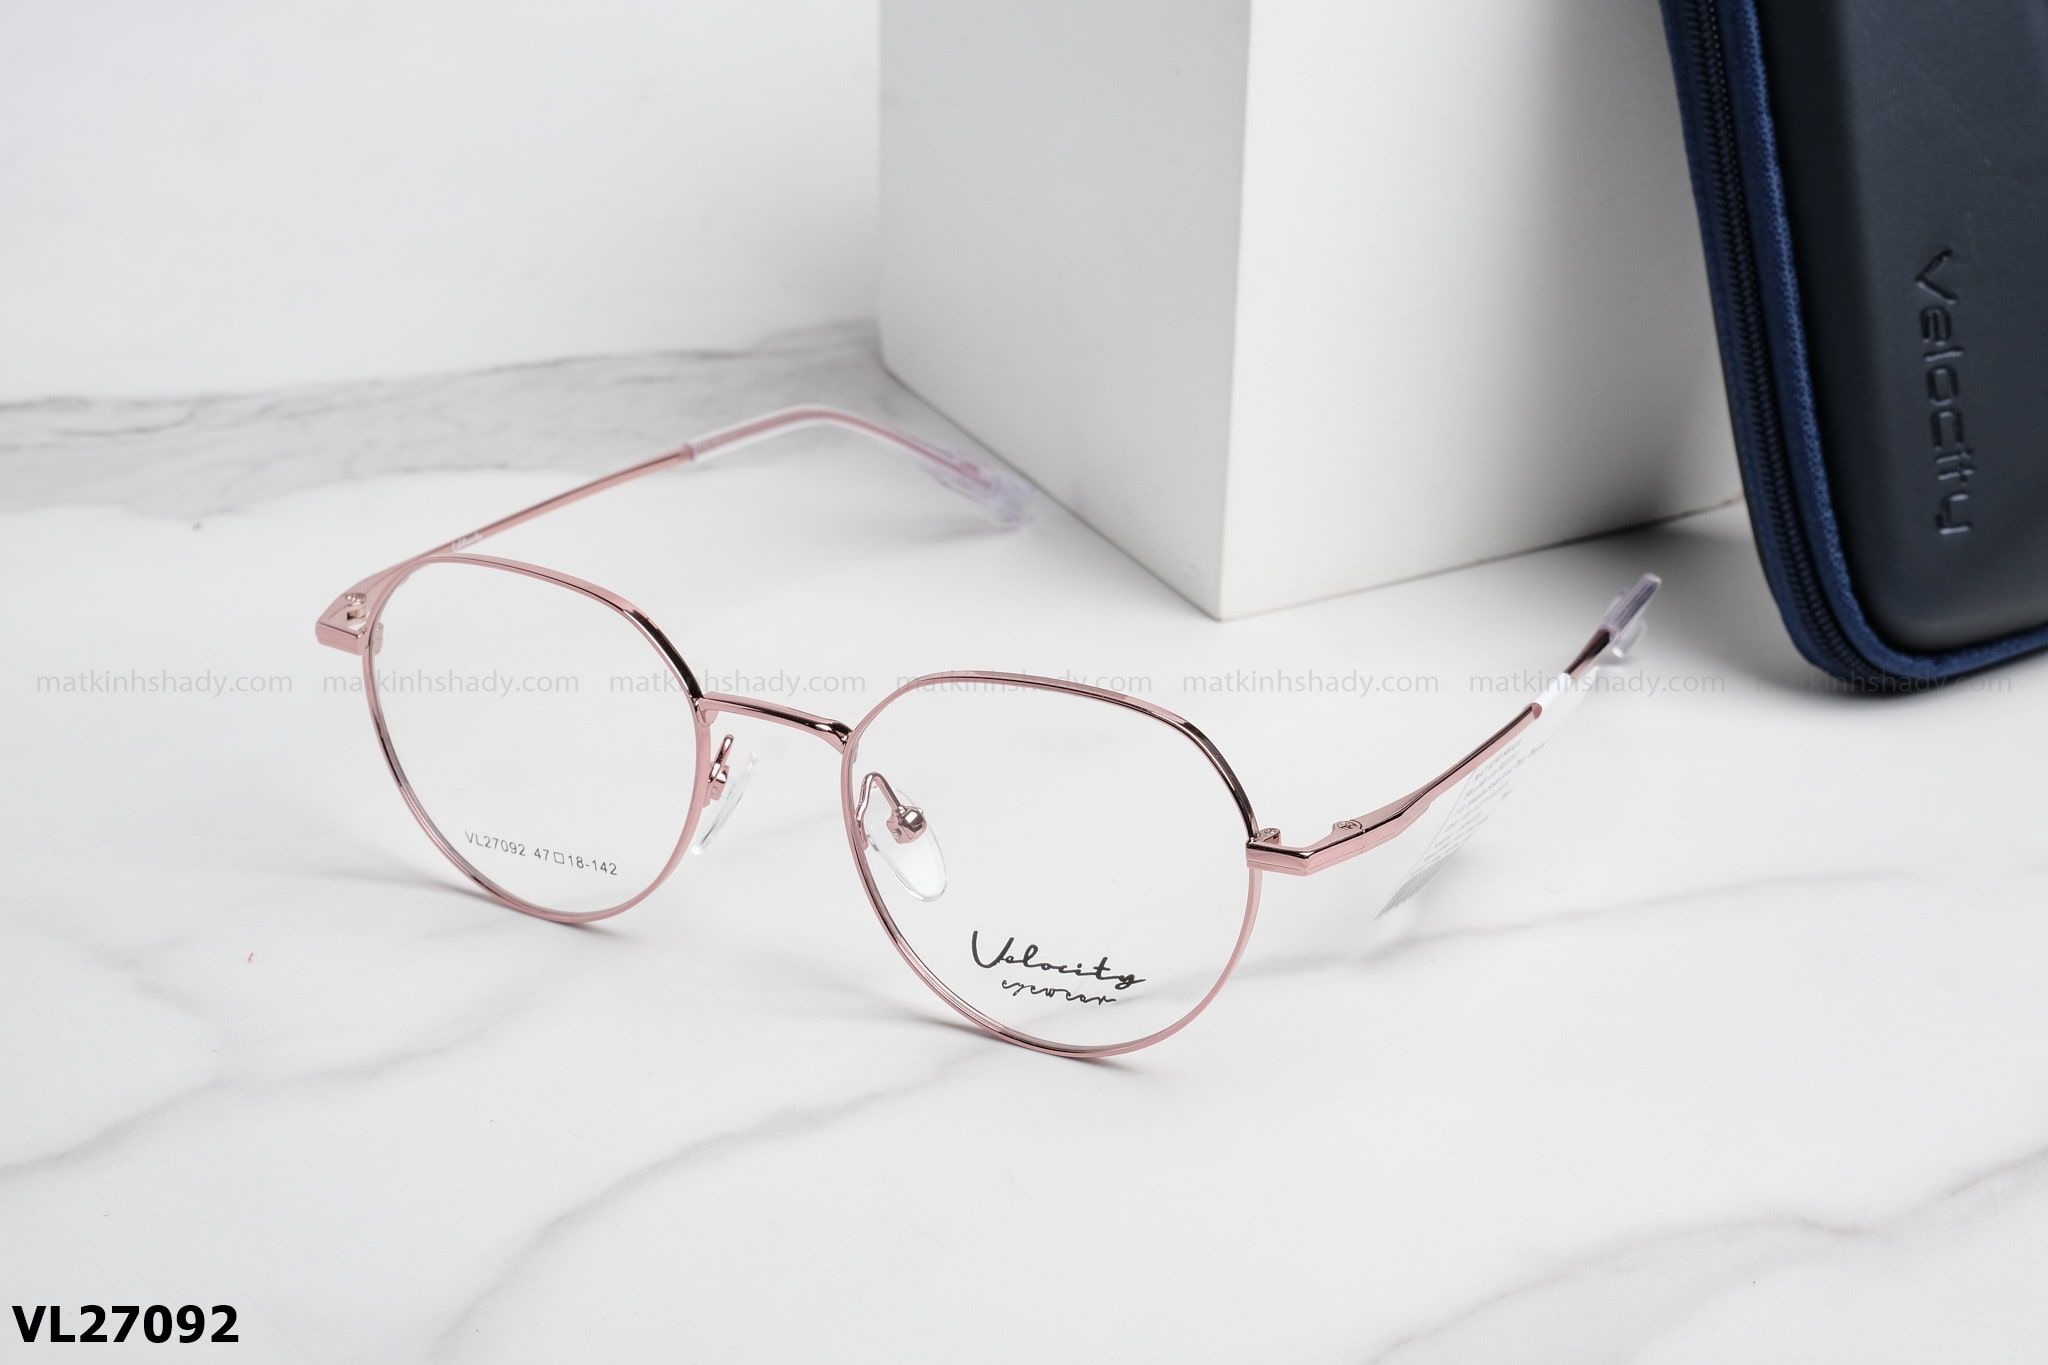  Velocity Eyewear - Glasses - VL27092 